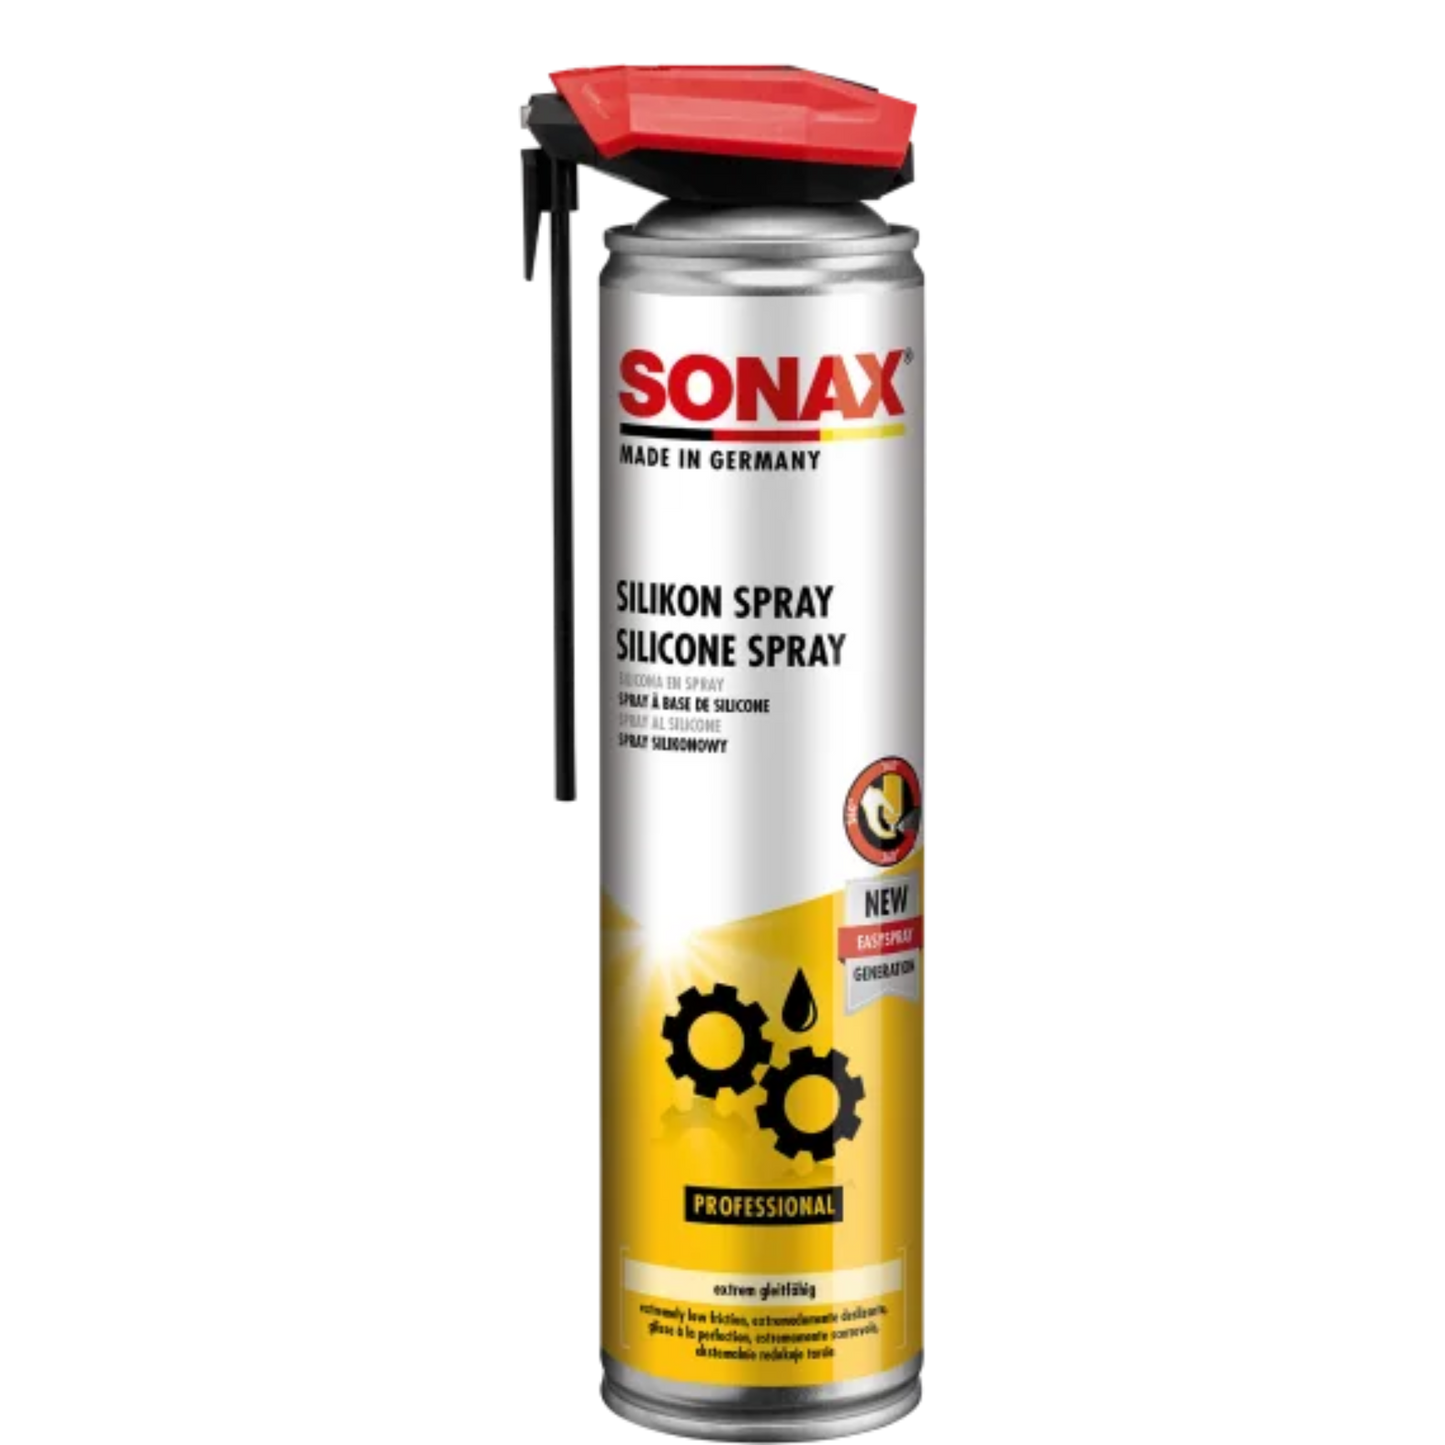 SONAX Silikonspray mit EasySpray, 400ml